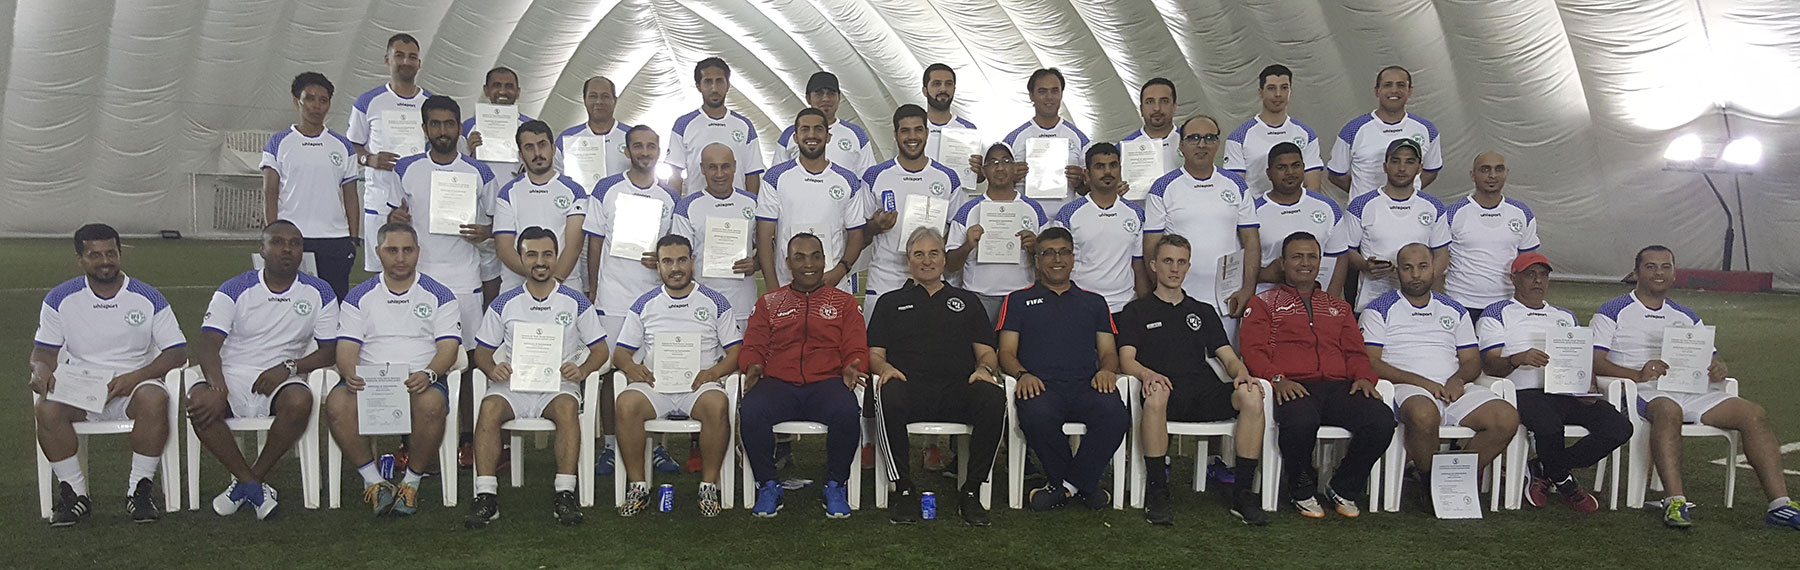 International Soccer Coaches Course in Dubai 2017